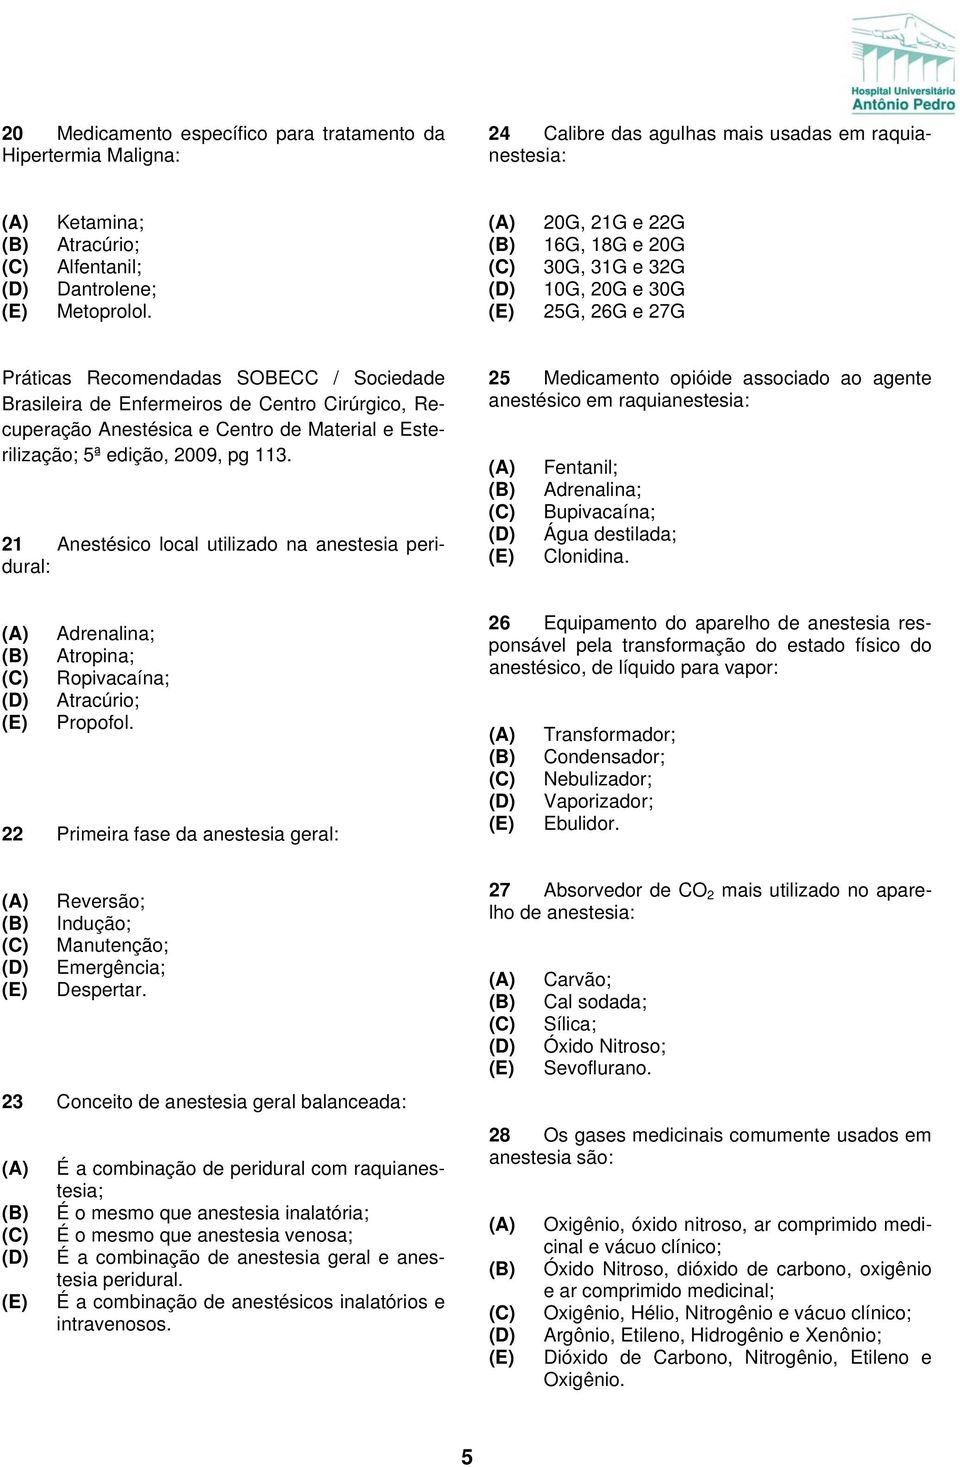 Material e Esterilização; 5ª edição, 2009, pg 113. 21 Anestésico local utilizado na anestesia peridural: Adrenalina; Atropina; Ropivacaína; Atracúrio; Propofol.